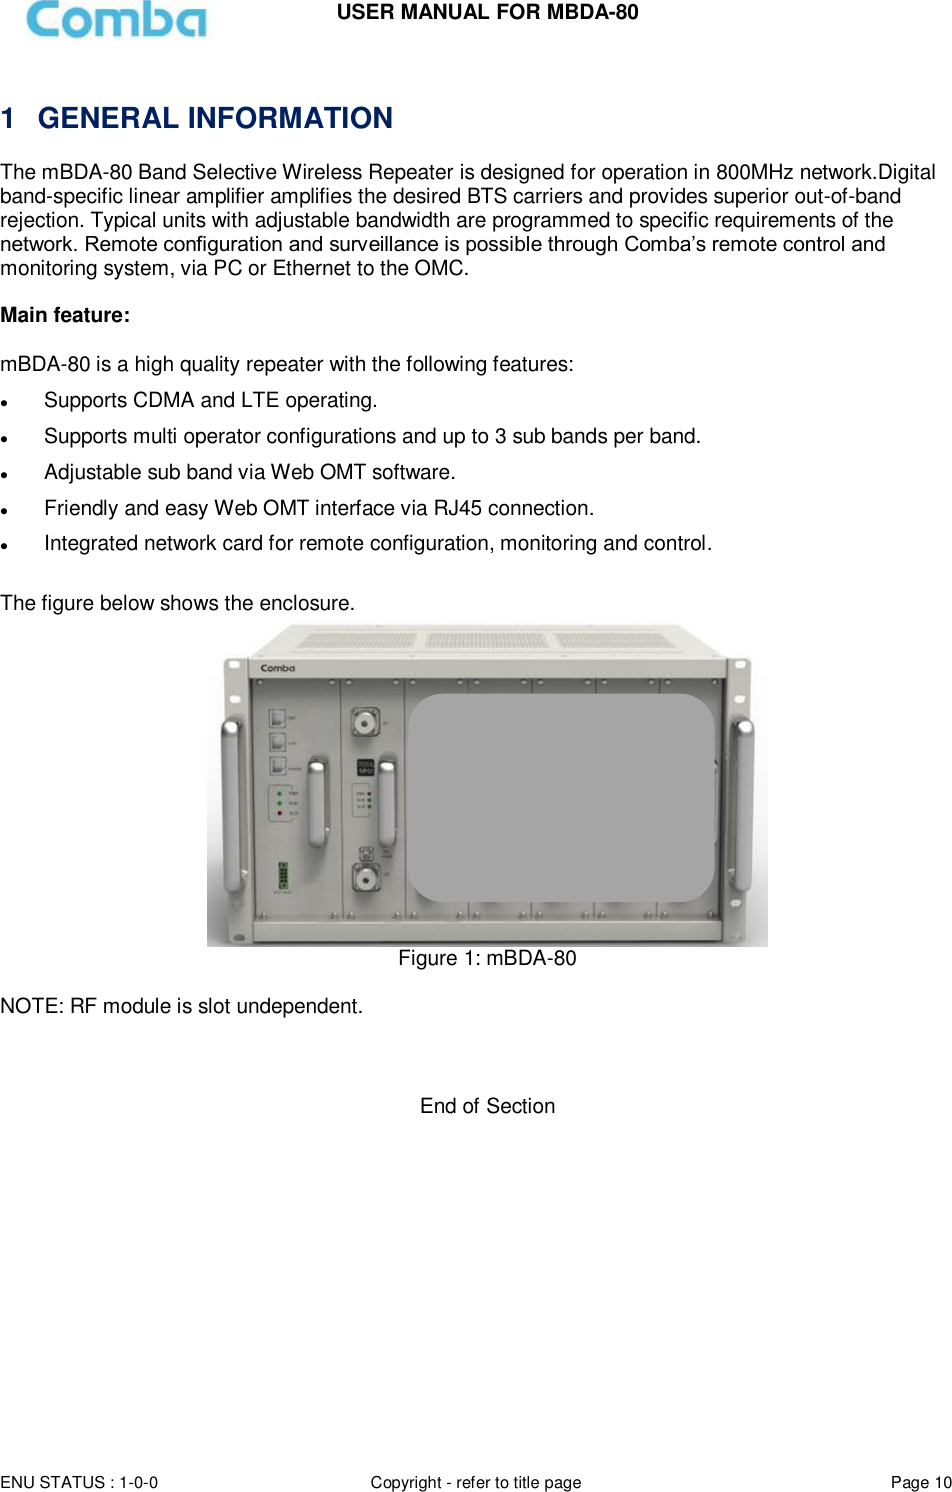 Page 10 of Comba Telecom MBDA-80 mBDA Band Seletive Repeater User Manual 